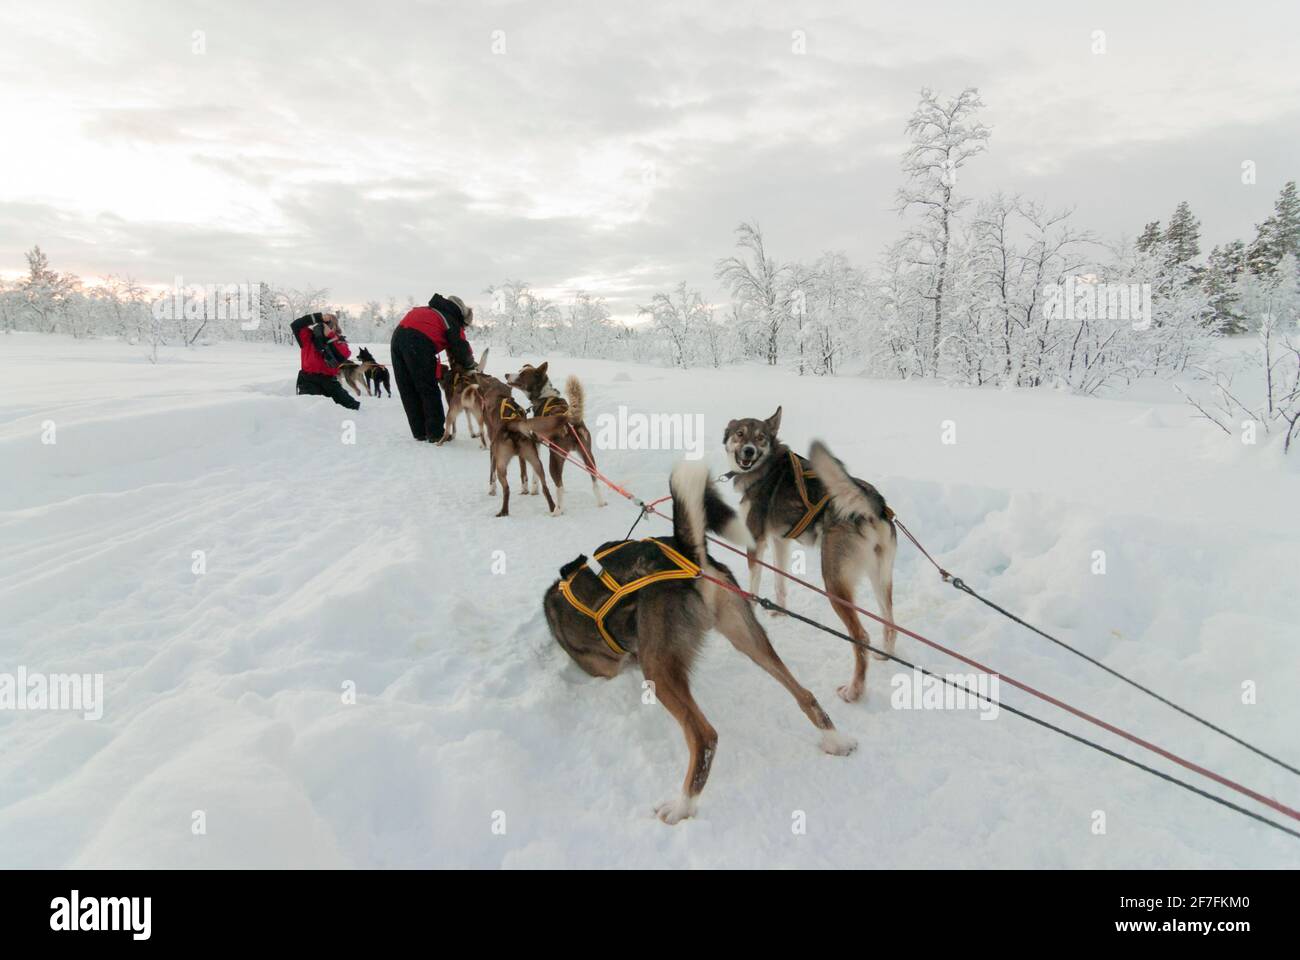 Touristes jouant avec des chiens de traîneau dans la neige et la glace du cercle arctique, près de Kiruna, Suède. Un des chiens roule dans la neige. Banque D'Images